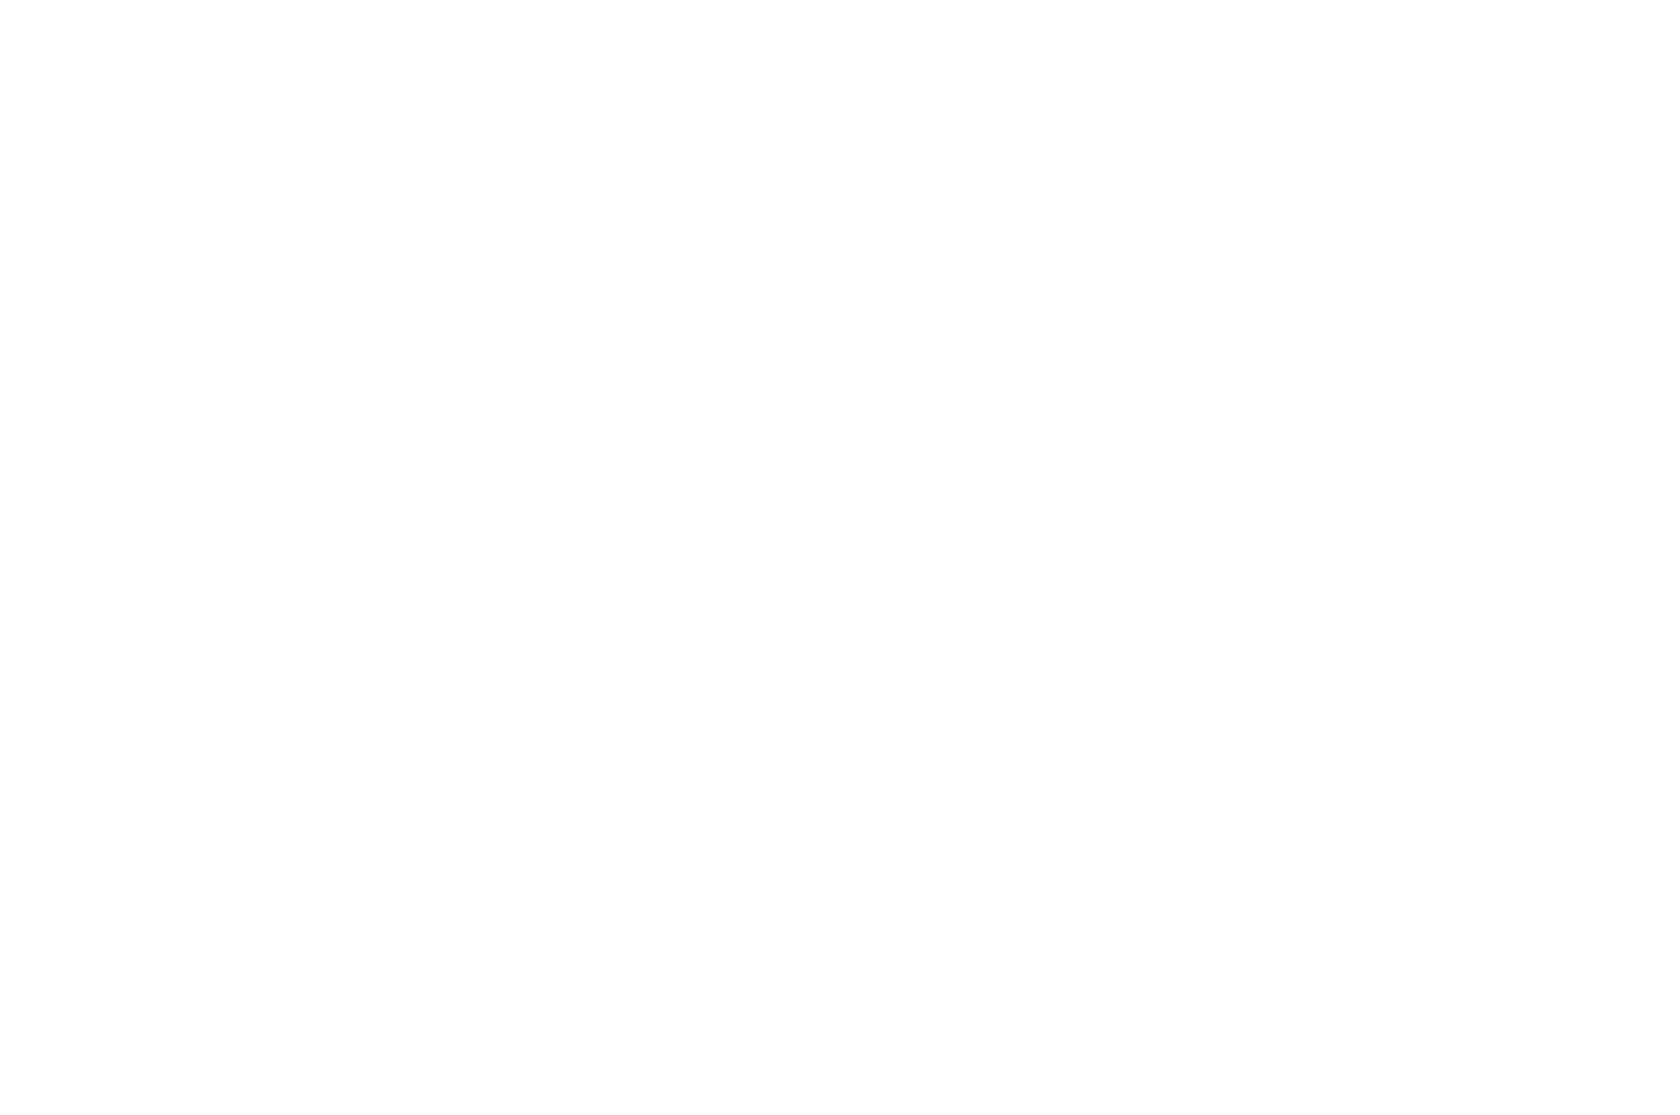 Микронидлинг, а также аппаратное введение мезопрепаратов и сывороток - косметология в Северном Бутово / Грина / Дмитрия-Донского